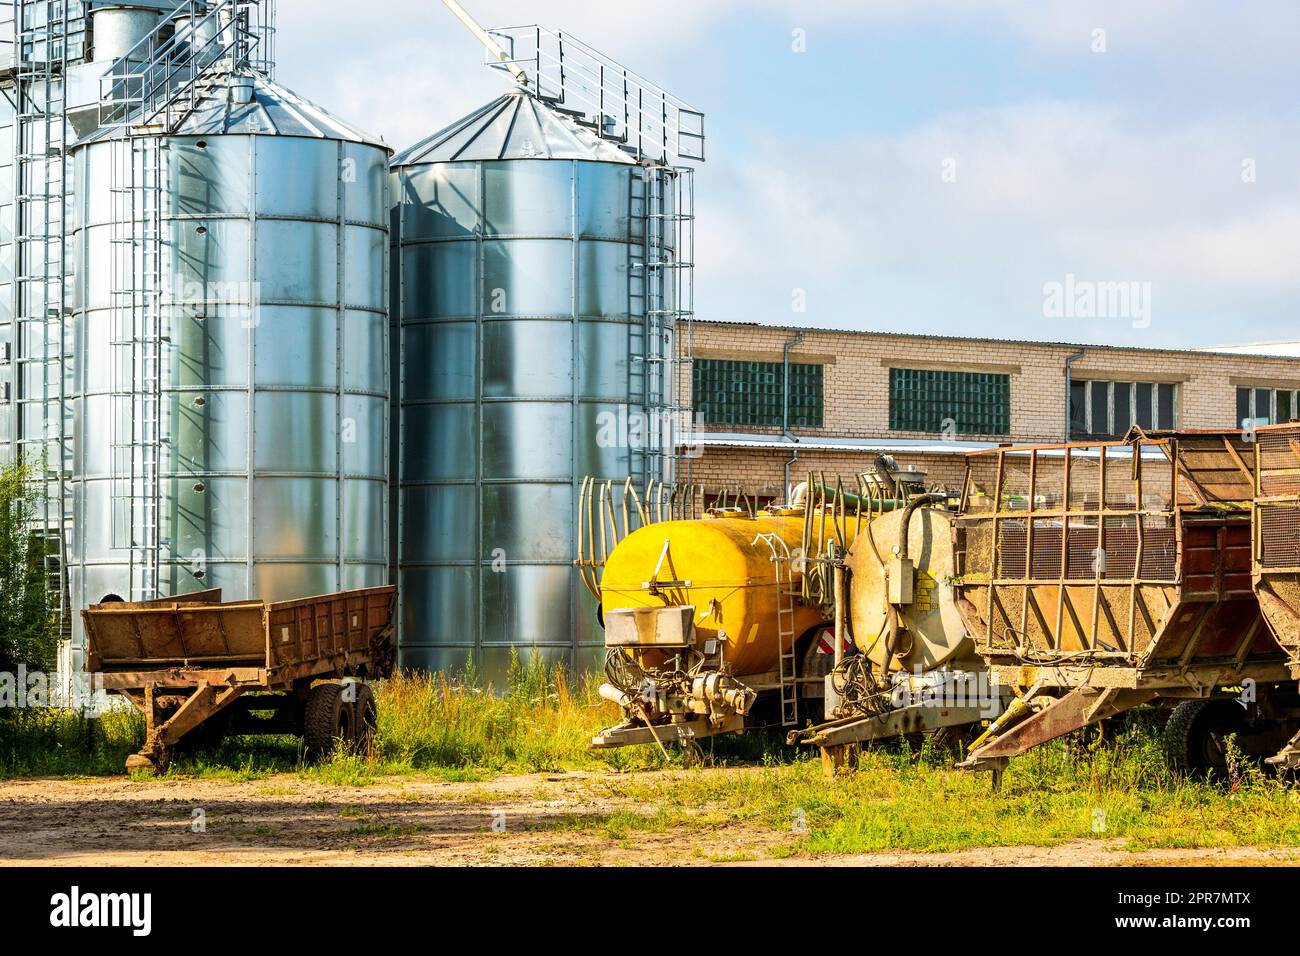 Cantiere agricolo con rimorchi agricoli, serbatoi e stoccaggio del grano Foto Stock